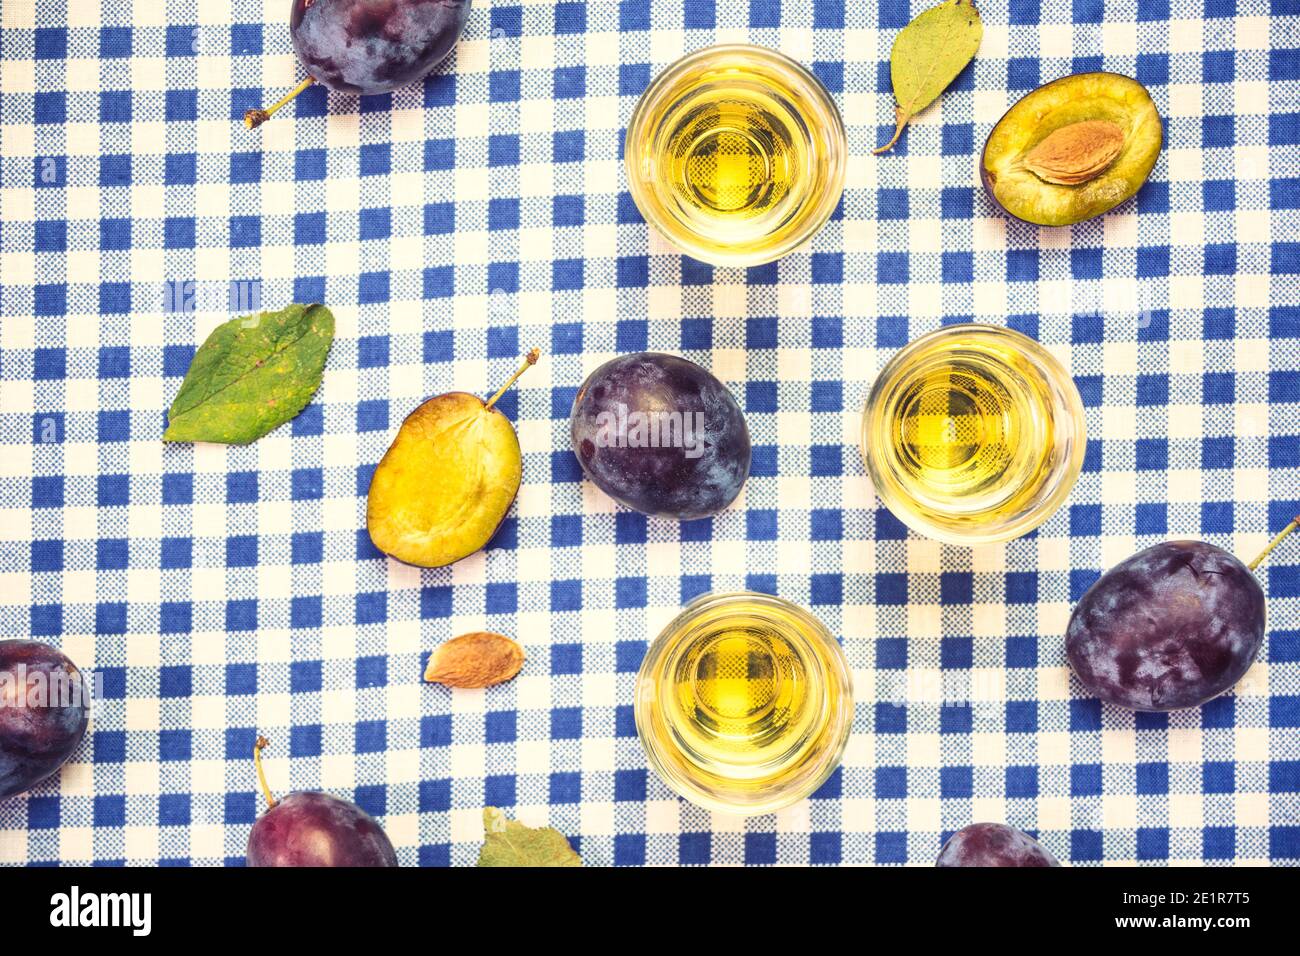 Le rakija, le raki ou le rakia est un cognac de boisson alcoolisée des Balkans à base de fruits fermentés. Prune rakia sur la table, vue du dessus. Banque D'Images